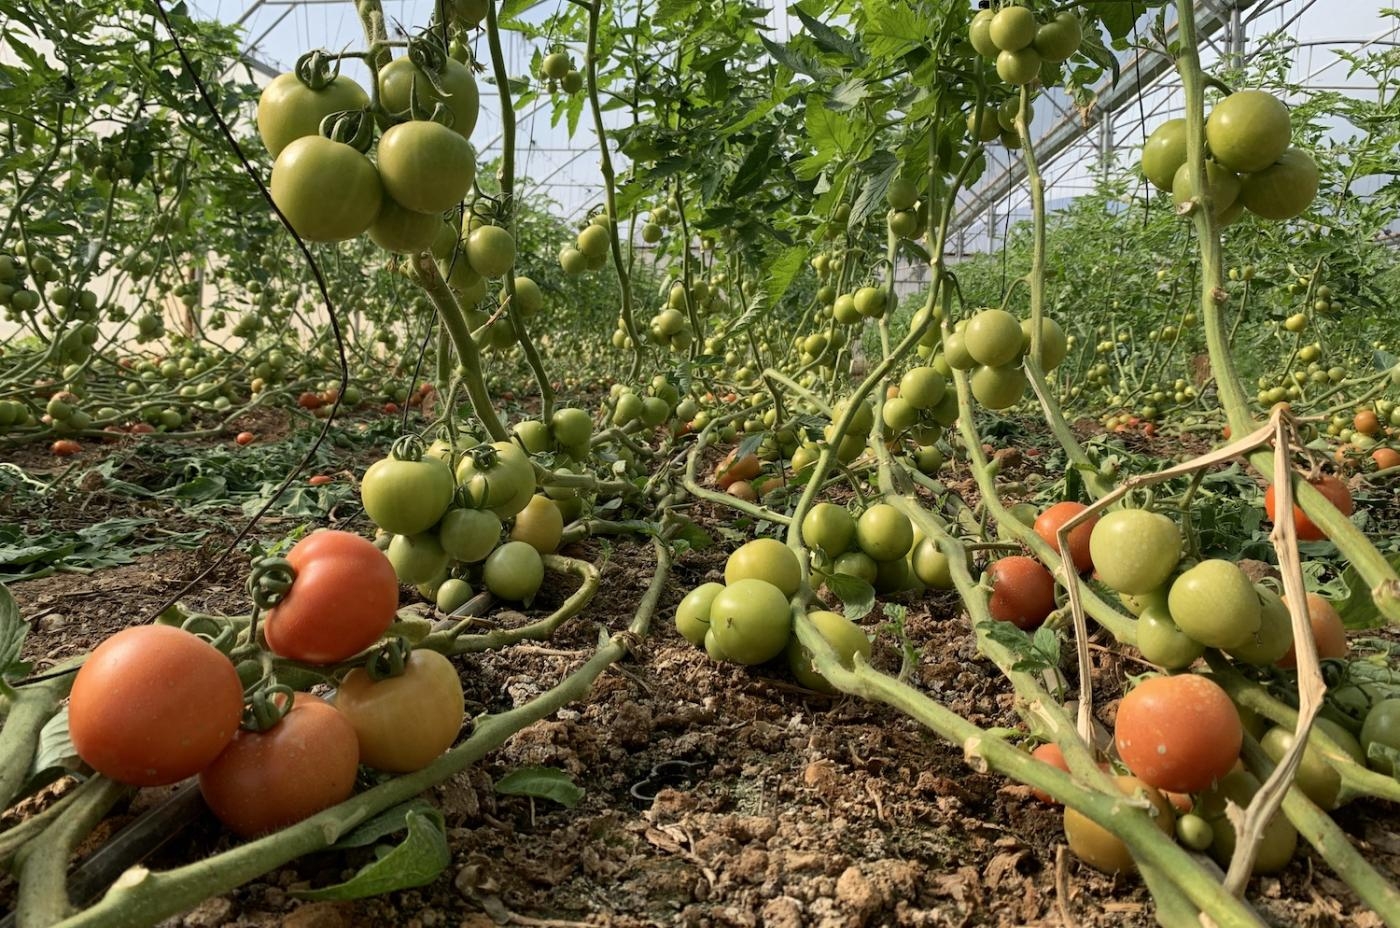 De nombreux agriculteurs de Furush Beit Dajan se sont mis à cultiver des tomates, culture moins gourmande en eau et en terre que les citronniers (MEE/Shatha Hammad)